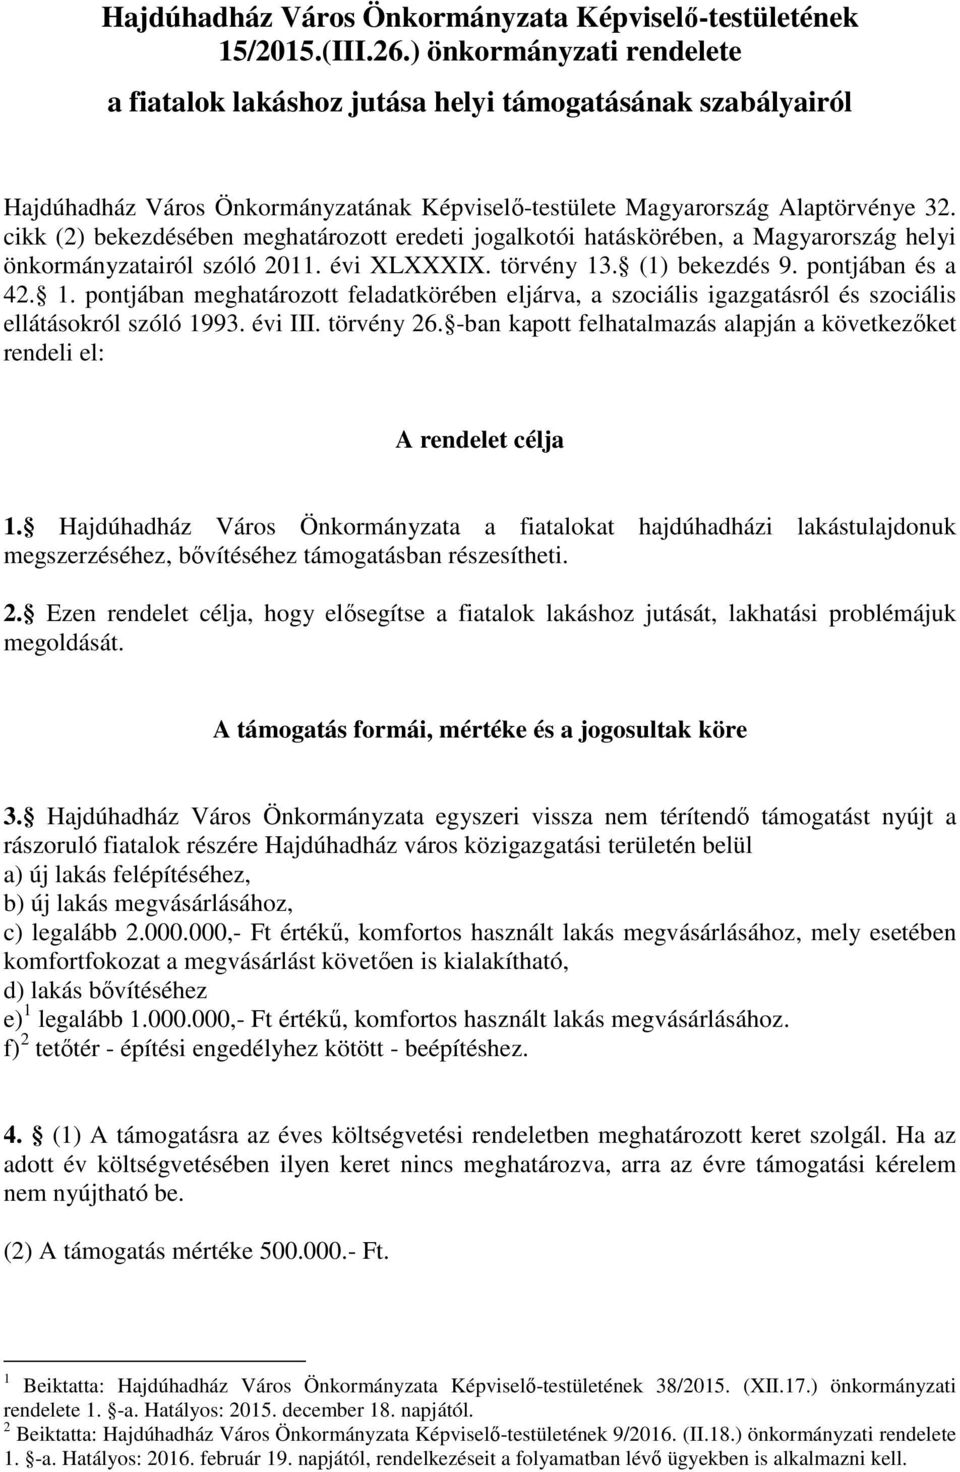 cikk (2) bekezdésében meghatározott eredeti jogalkotói hatáskörében, a Magyarország helyi önkormányzatairól szóló 2011. évi XLXXXIX. törvény 13